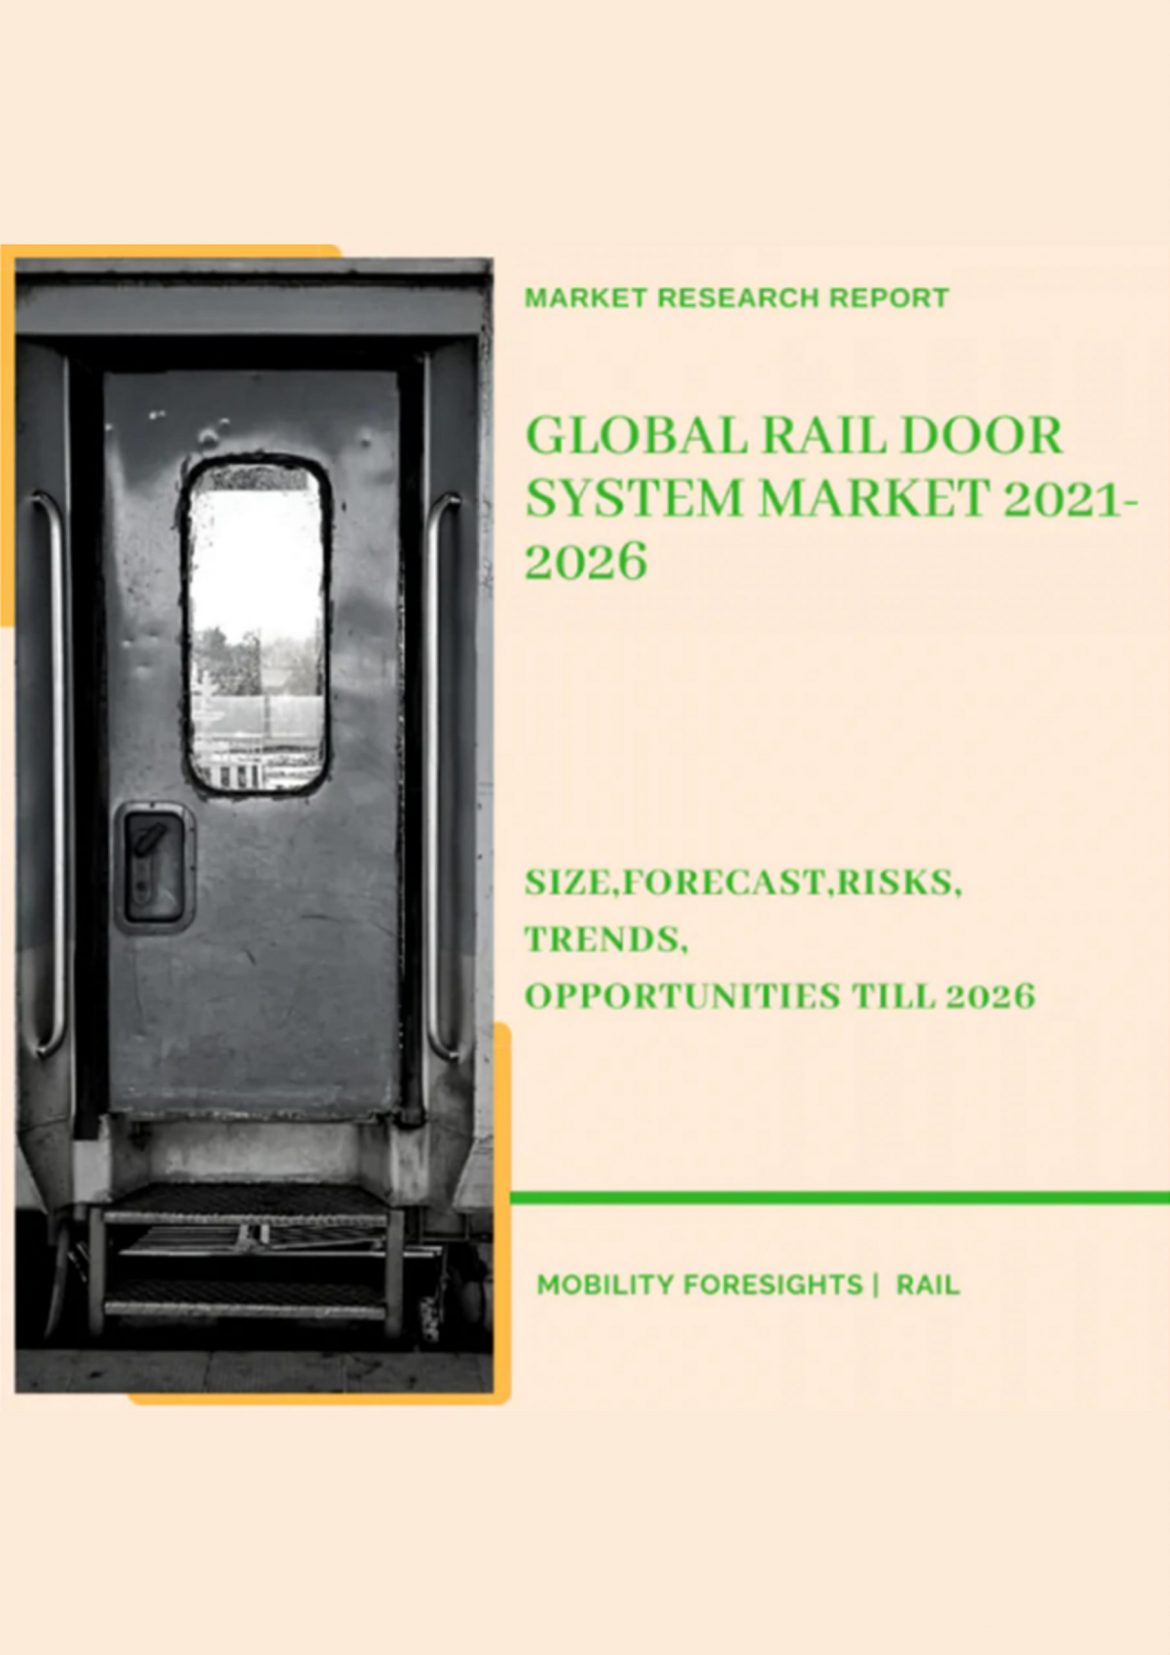 Global Rail Door System Market 2021-2026